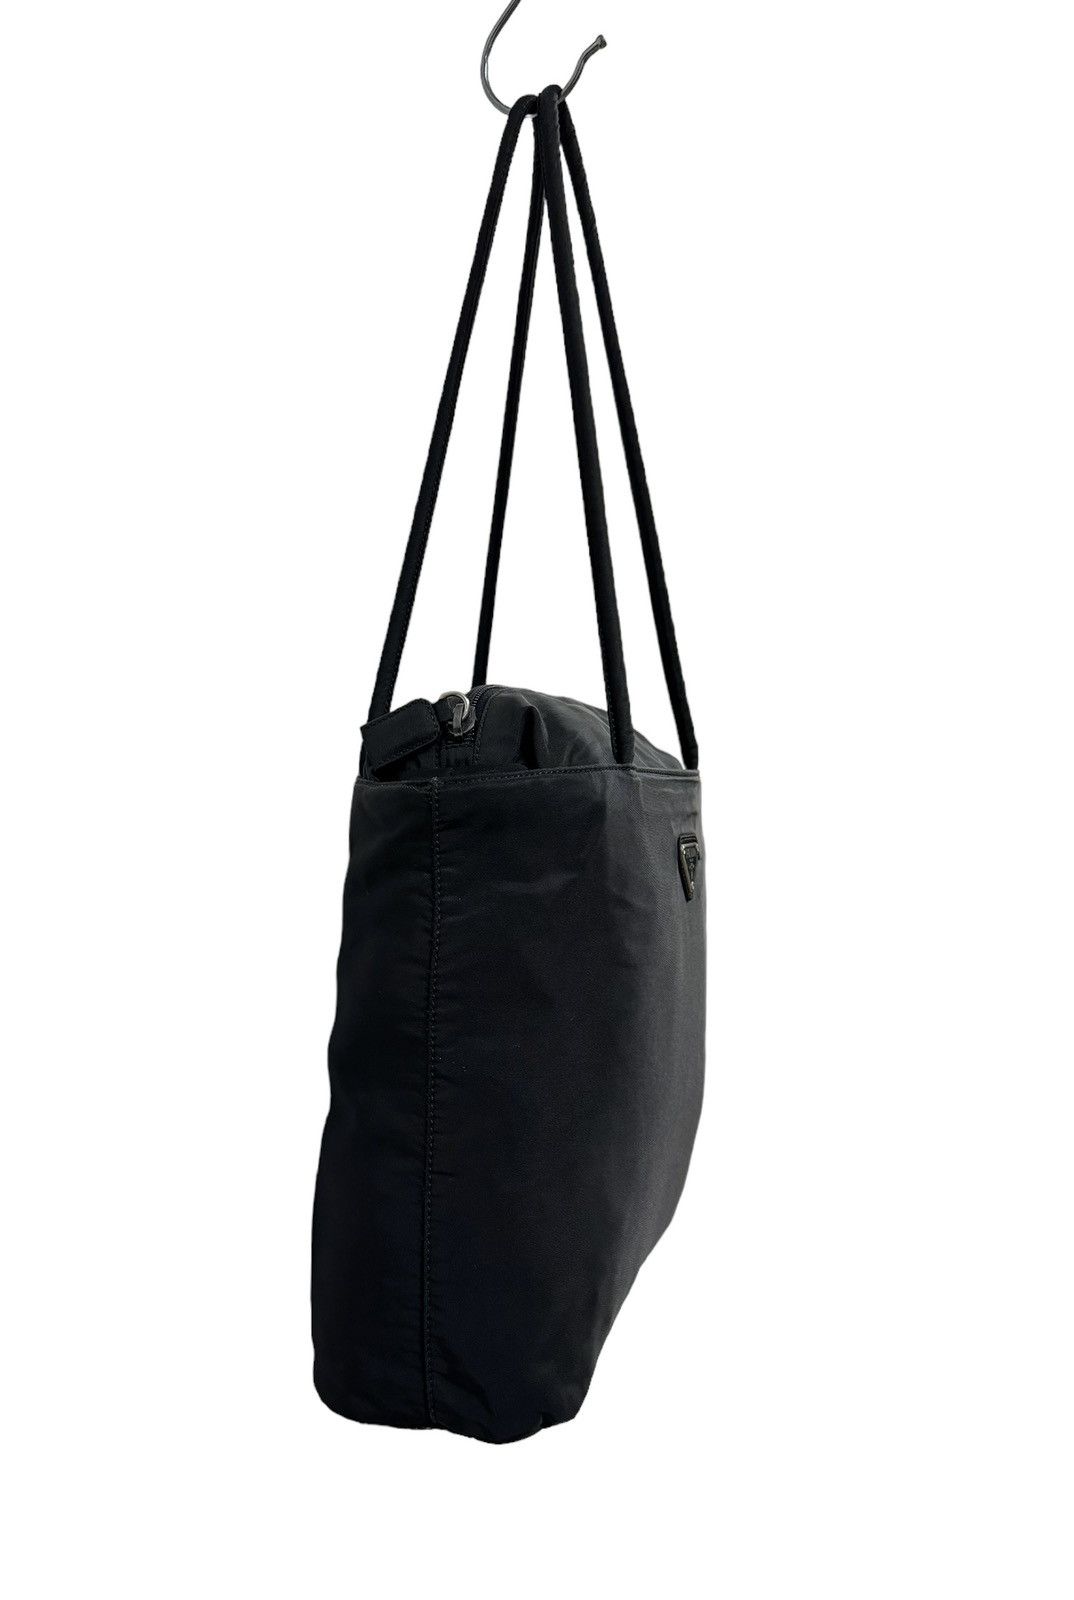 Authentic🔥Prada Tessuto Black Nylon Tote Bags - 5